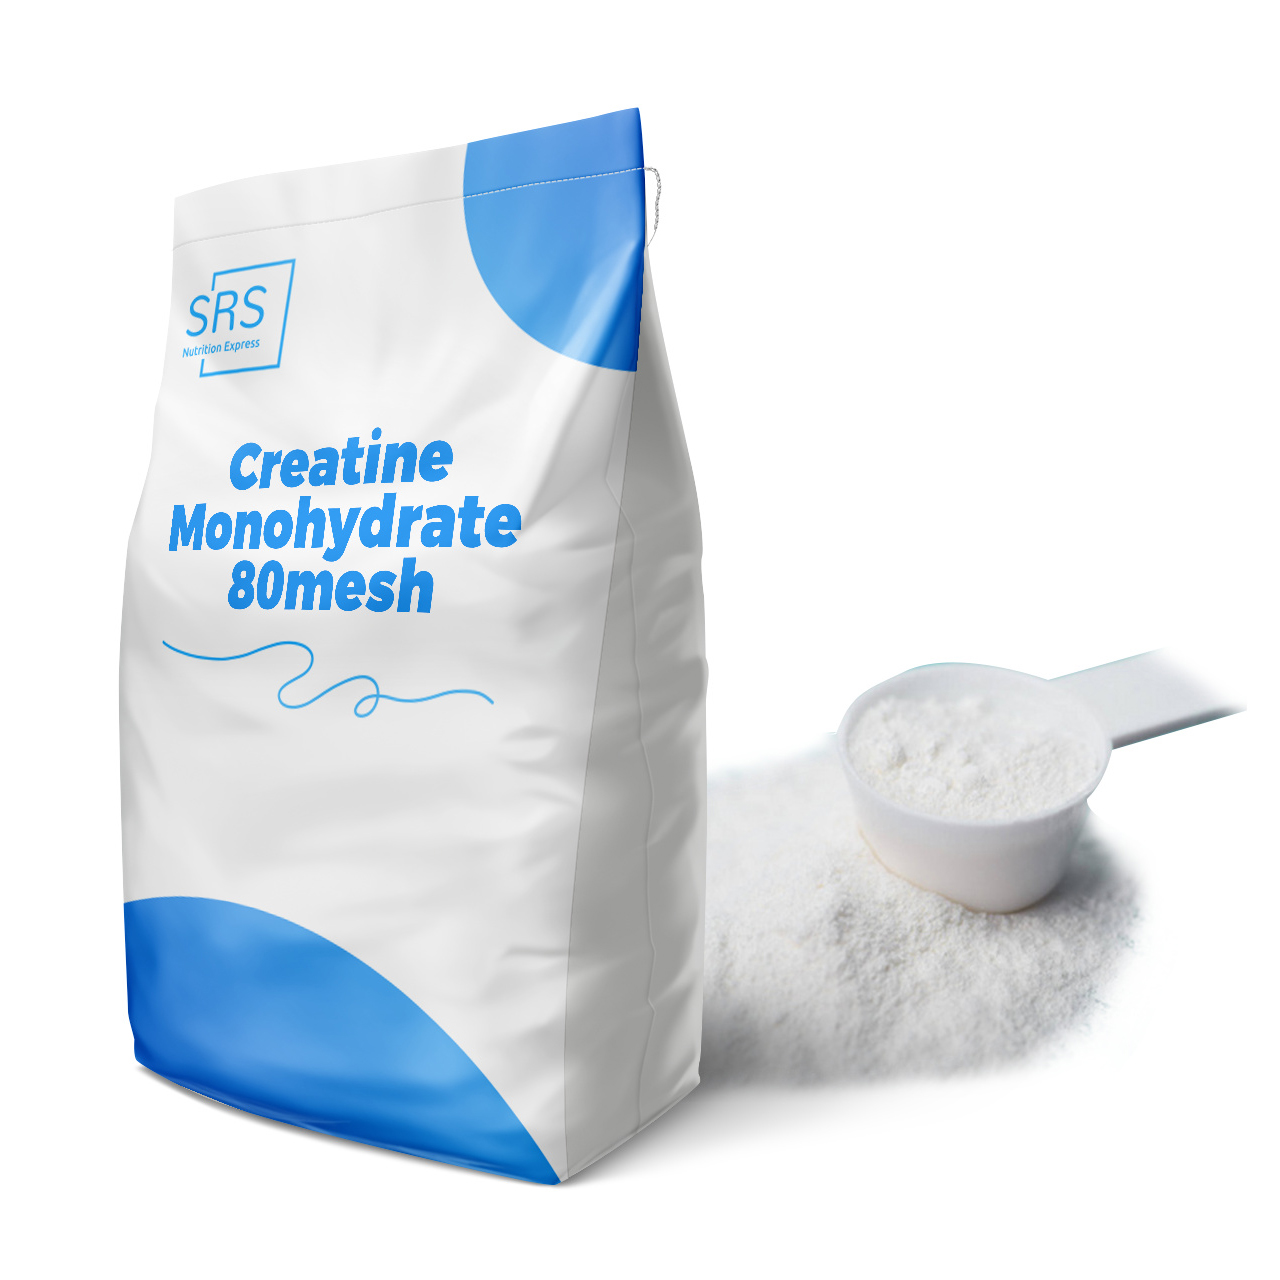 Reines Kreatin-Monohydrat 80 Mesh für verbesserte sportliche Leistung